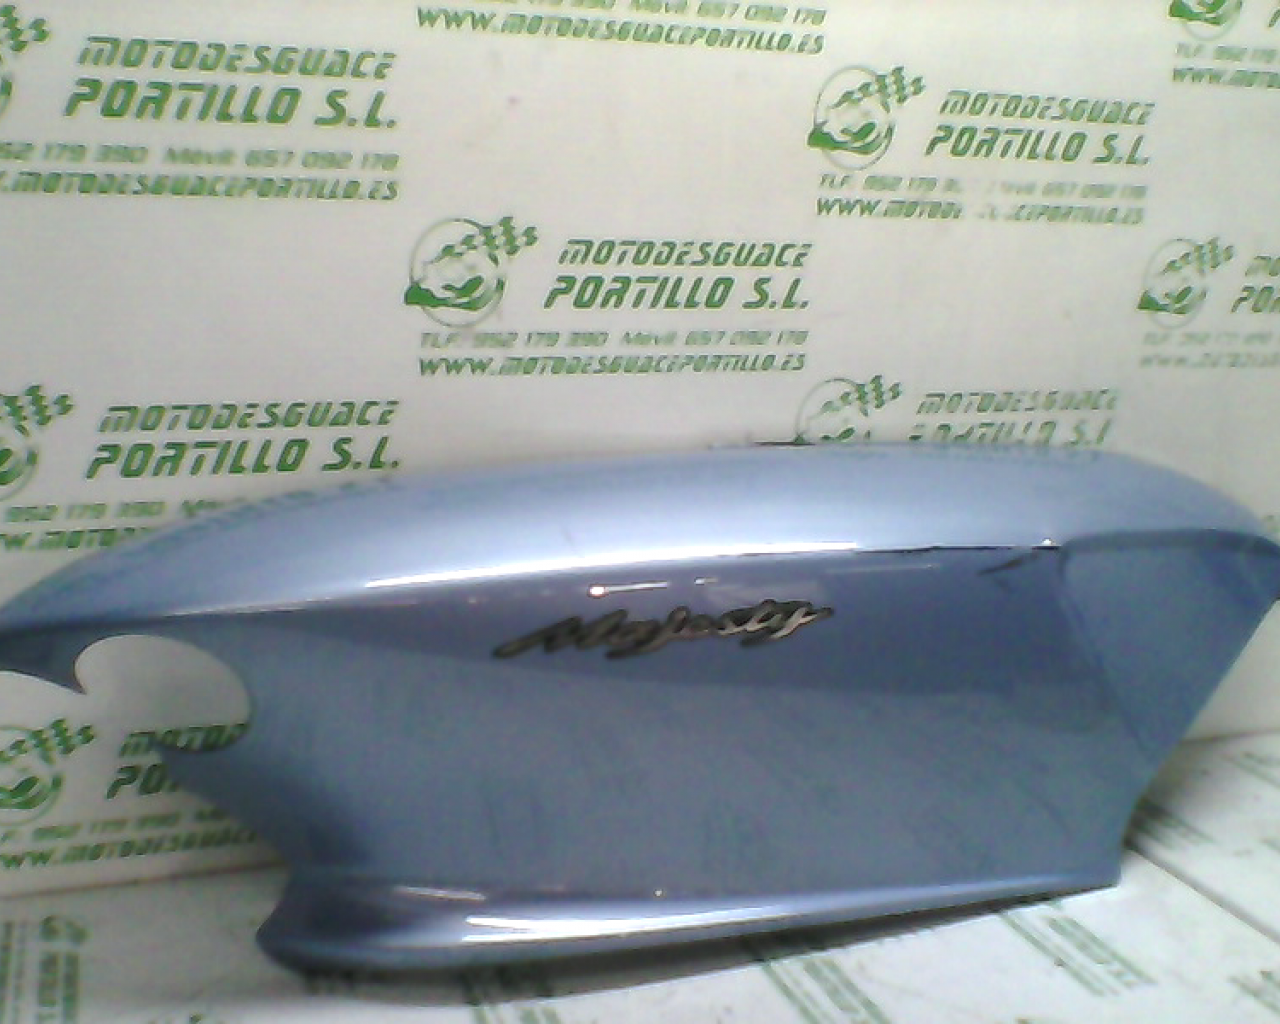 Carcasa lateral trasera derecha Yamaha Majesty 125 (2005-2007)